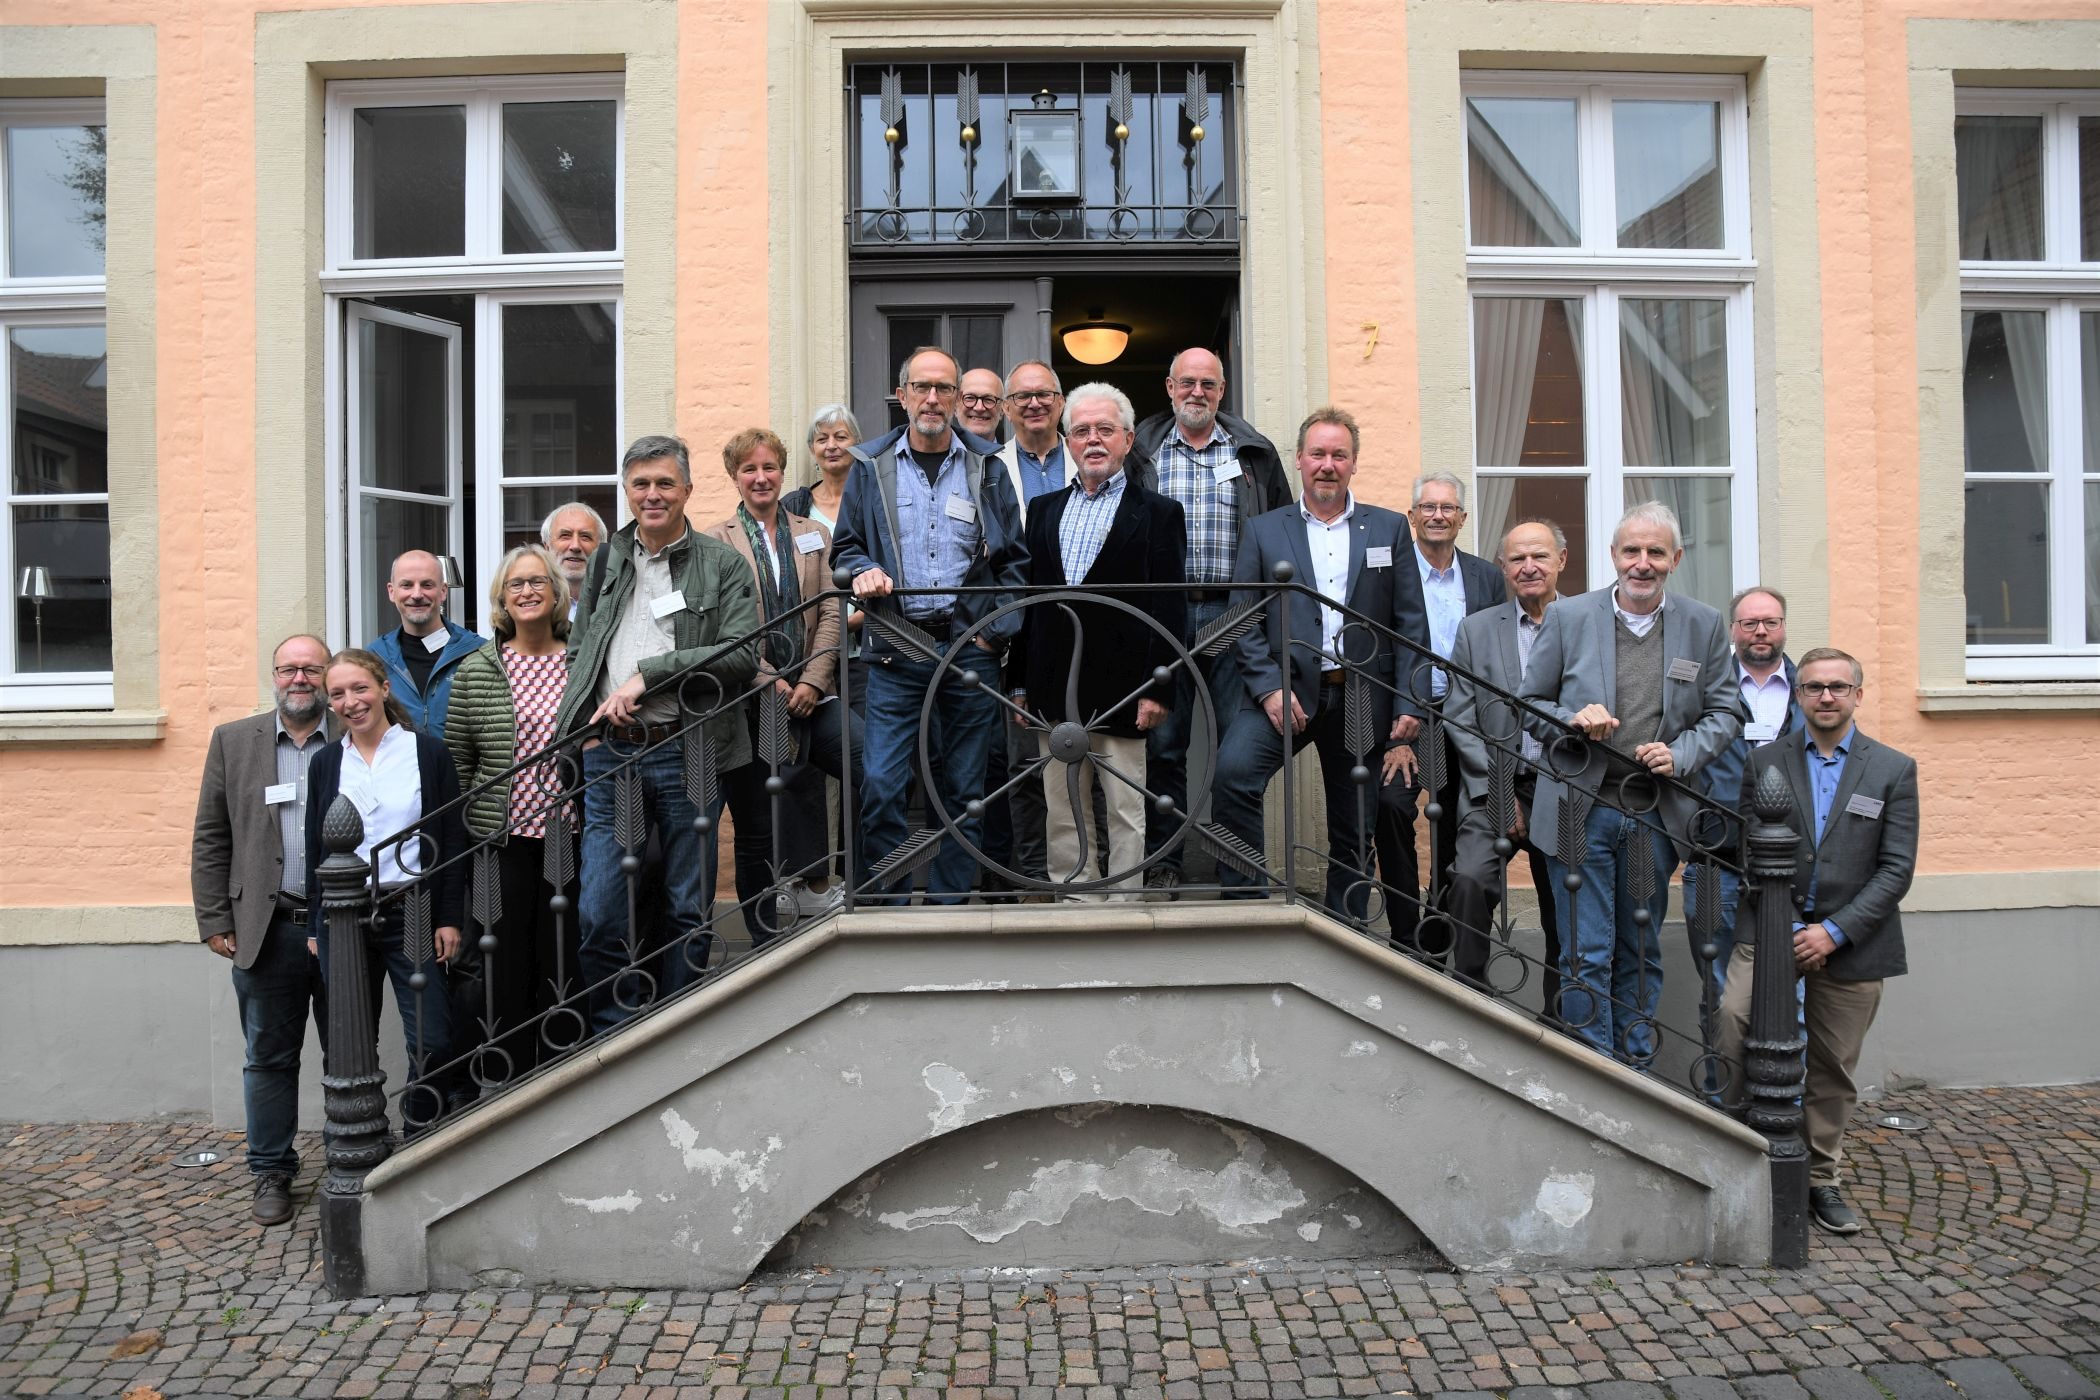 DNK-Preisträgertreffen bei den Altstadtfreunden in Warendorf  –  LWL würdigt ehrenamtliches und privates Engagement in der Denkmalpflege